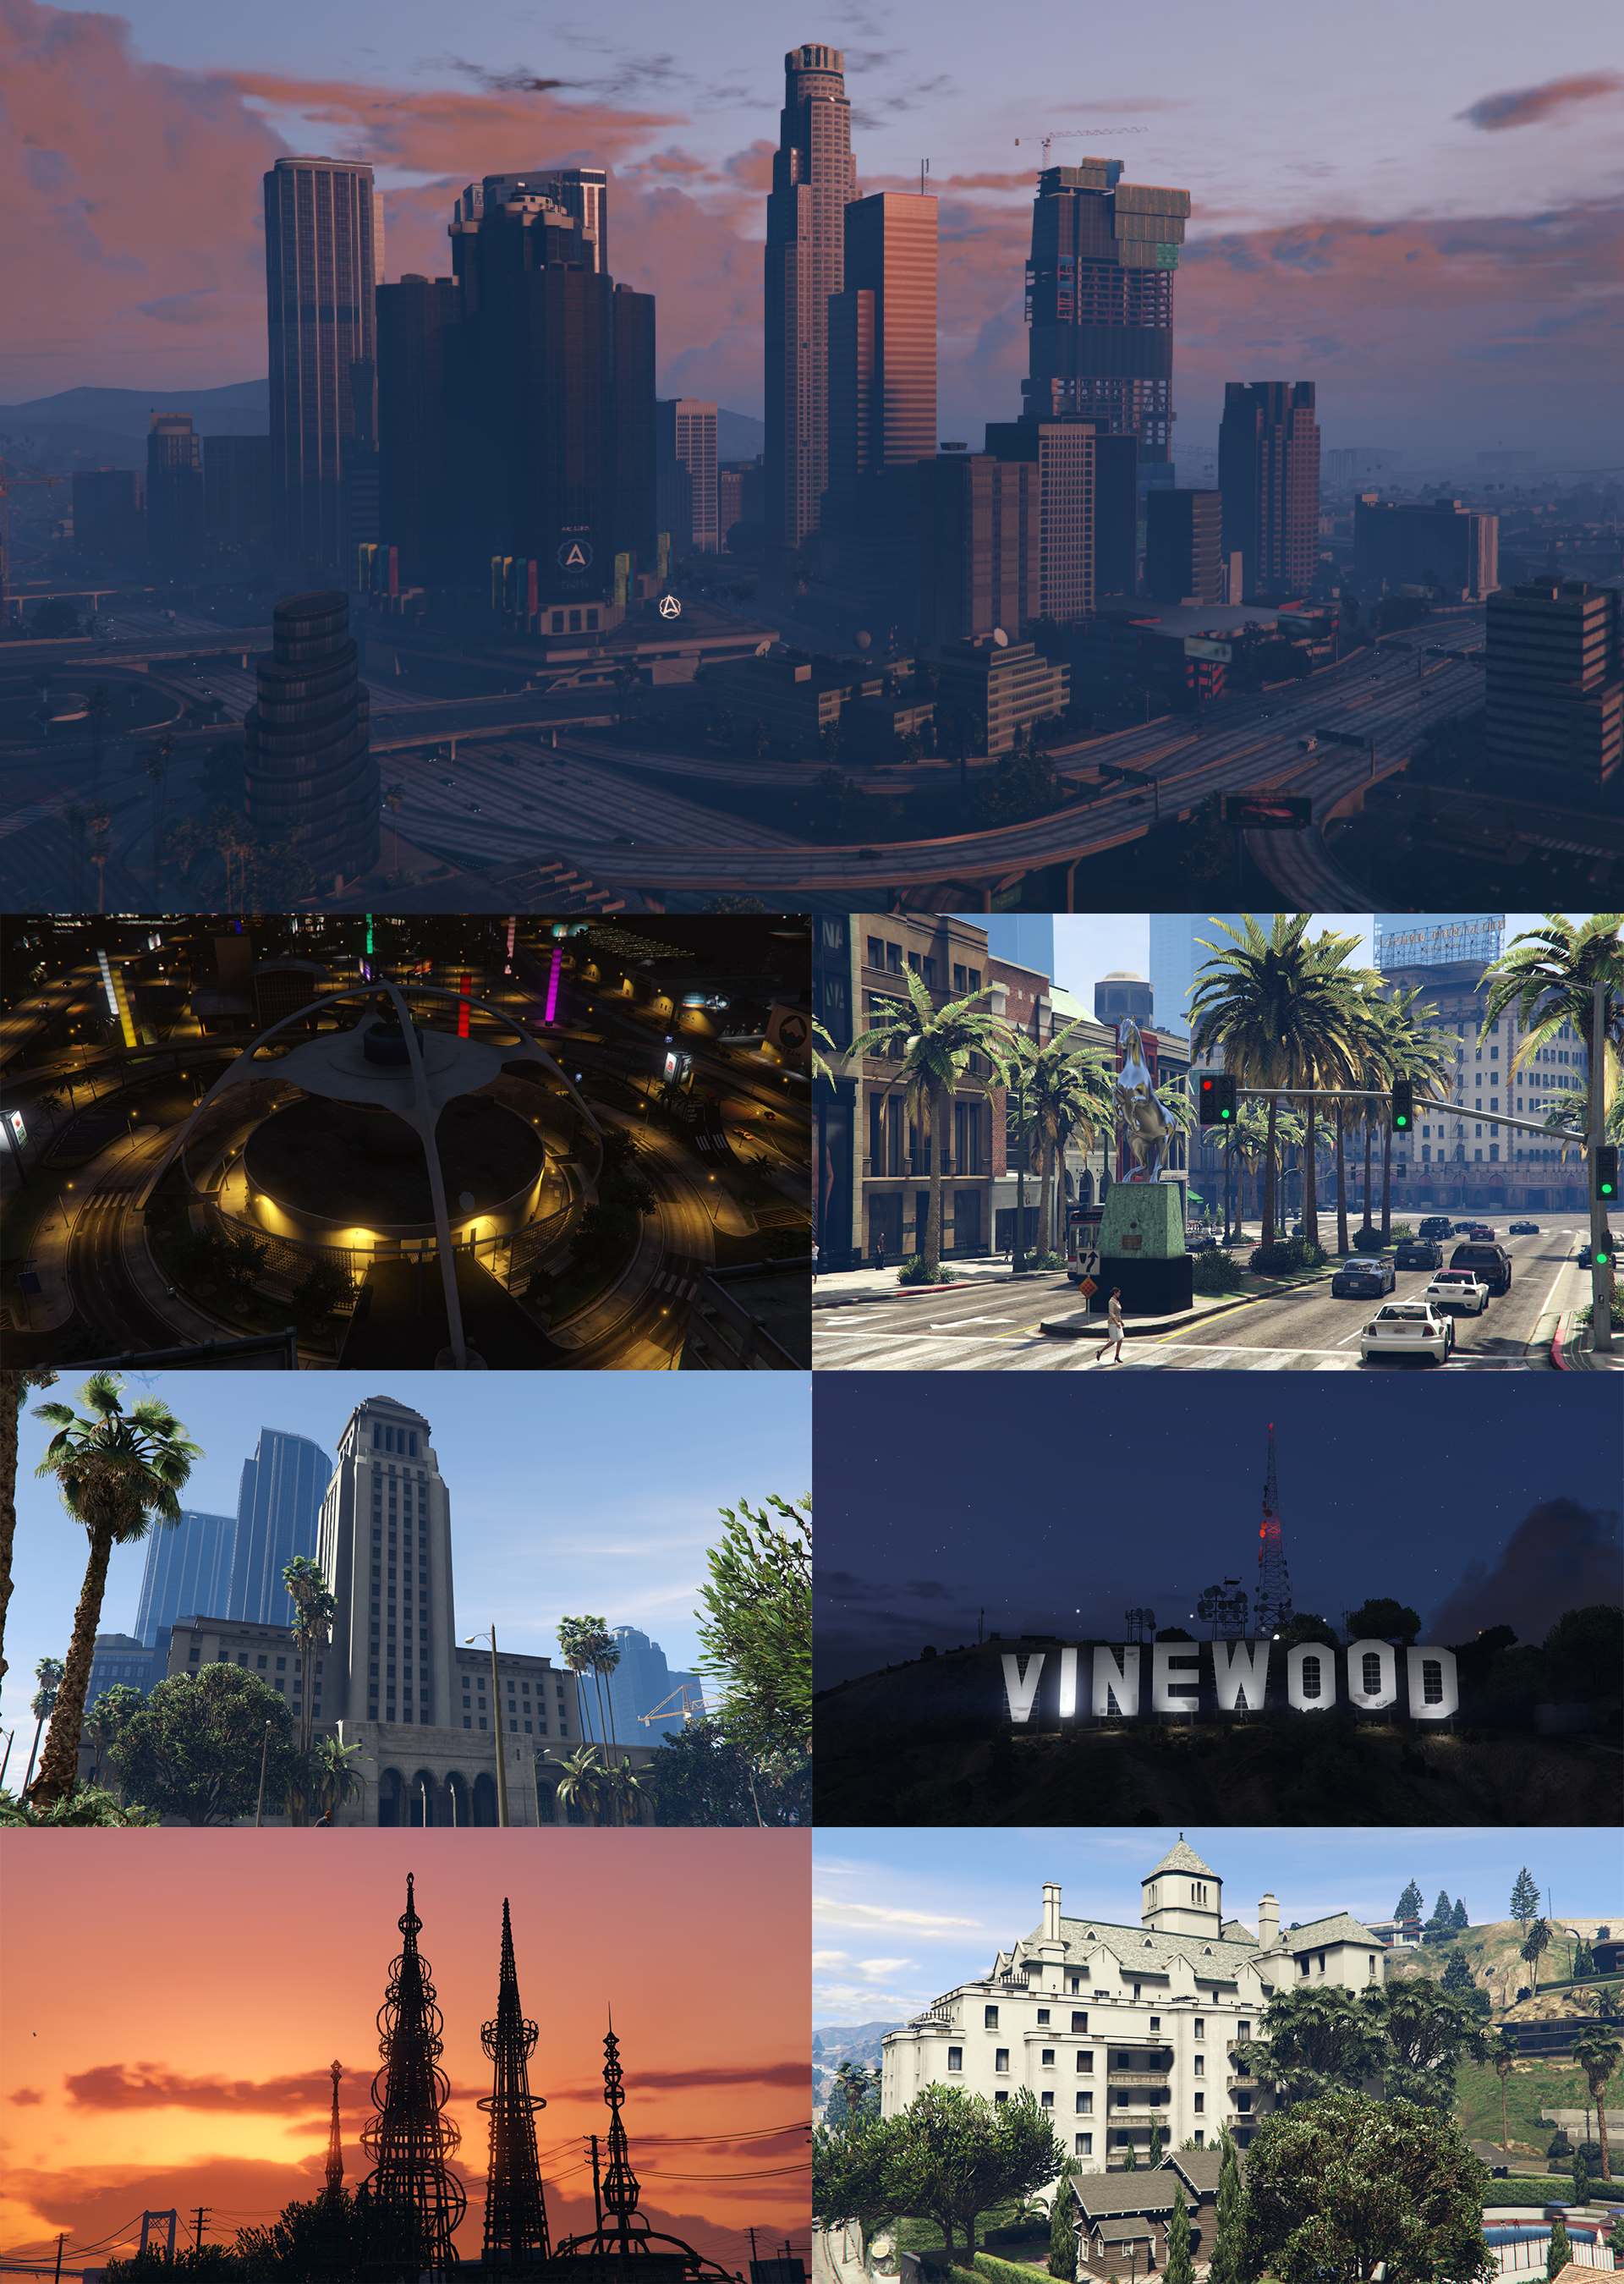 Thành phố Los Santos: Hãy theo chân những nhân vật trong trò chơi Grand Theft Auto và khám phá thành phố Los Santos với những trải nghiệm đầy hứng thú. Những bức họa về Los Santos sẽ giúp bạn tưởng tượng ra những thế giới kỳ ảo và đầy màu sắc.